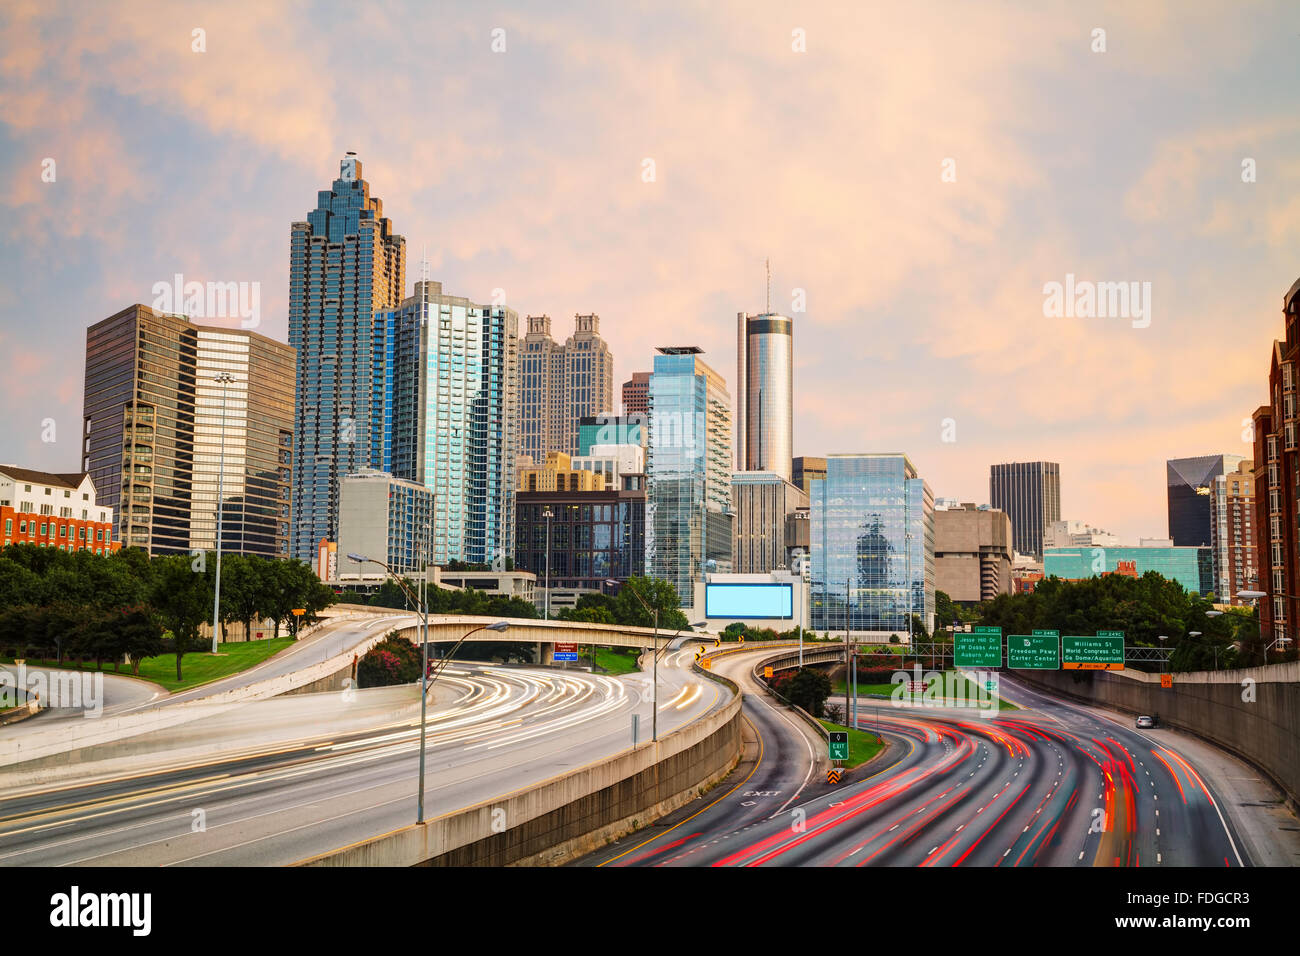 Downtown Atlanta, Georgia at the sunset time Stock Photo